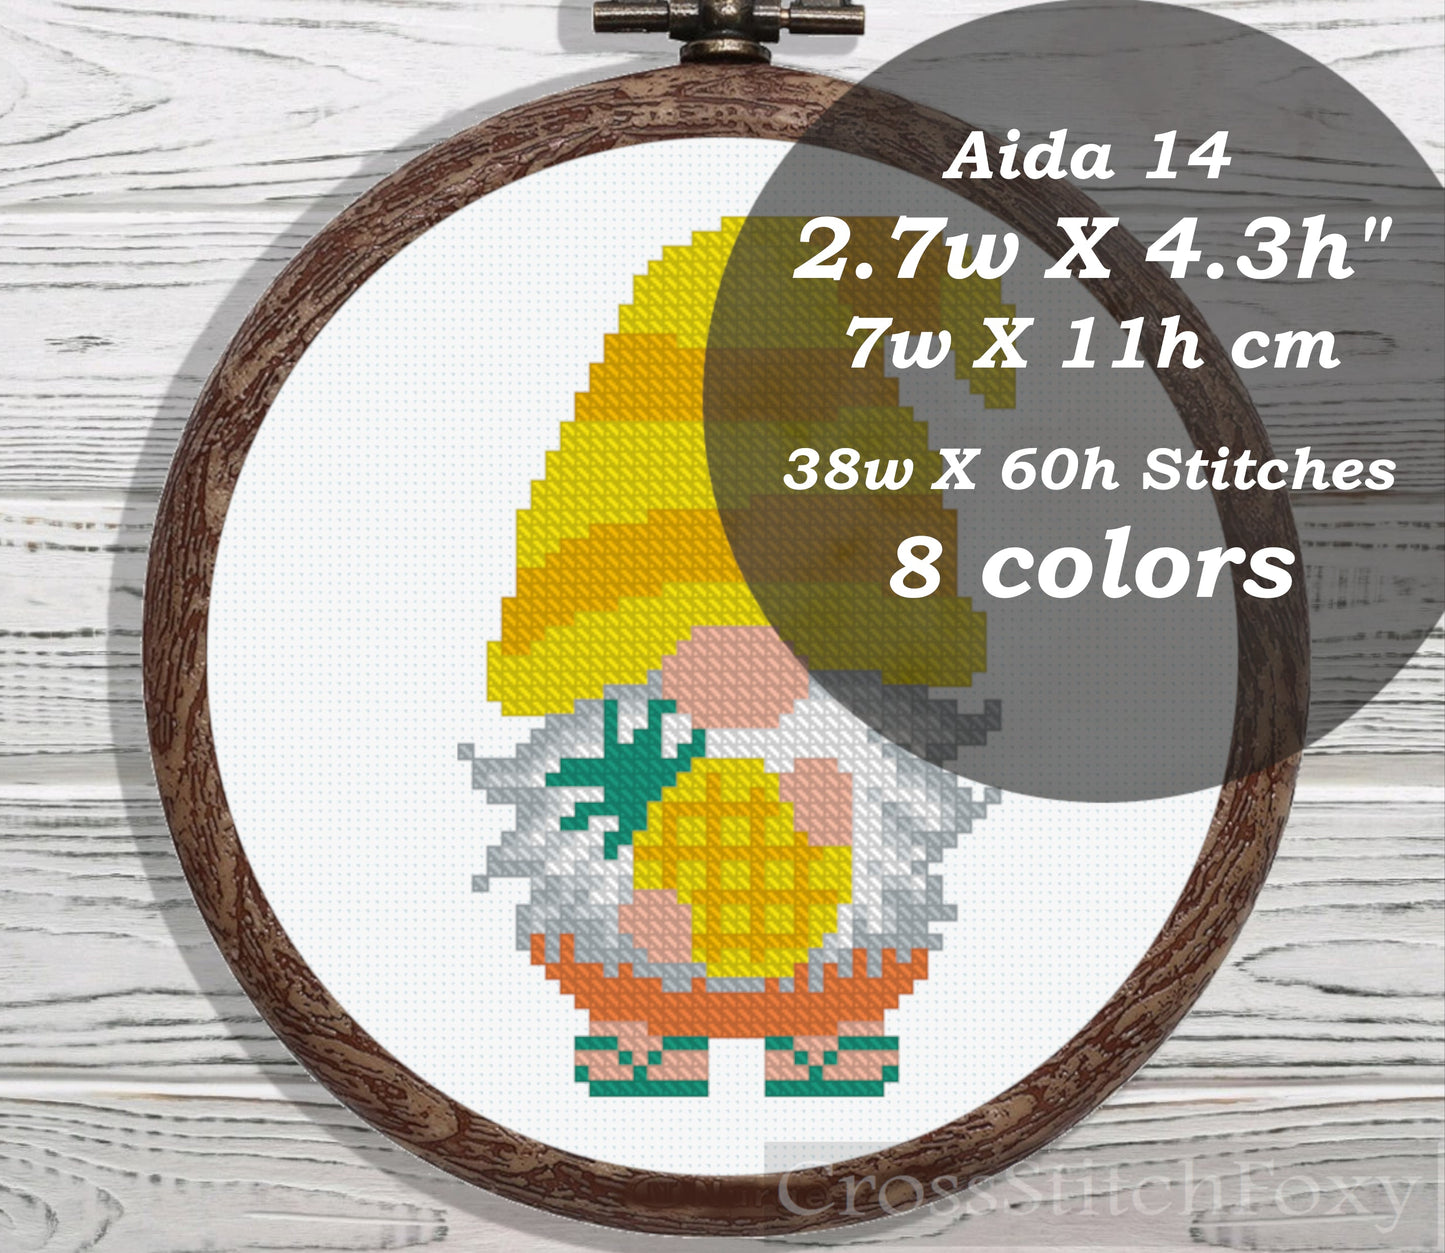 Pineapple gnome cross stitch pattern